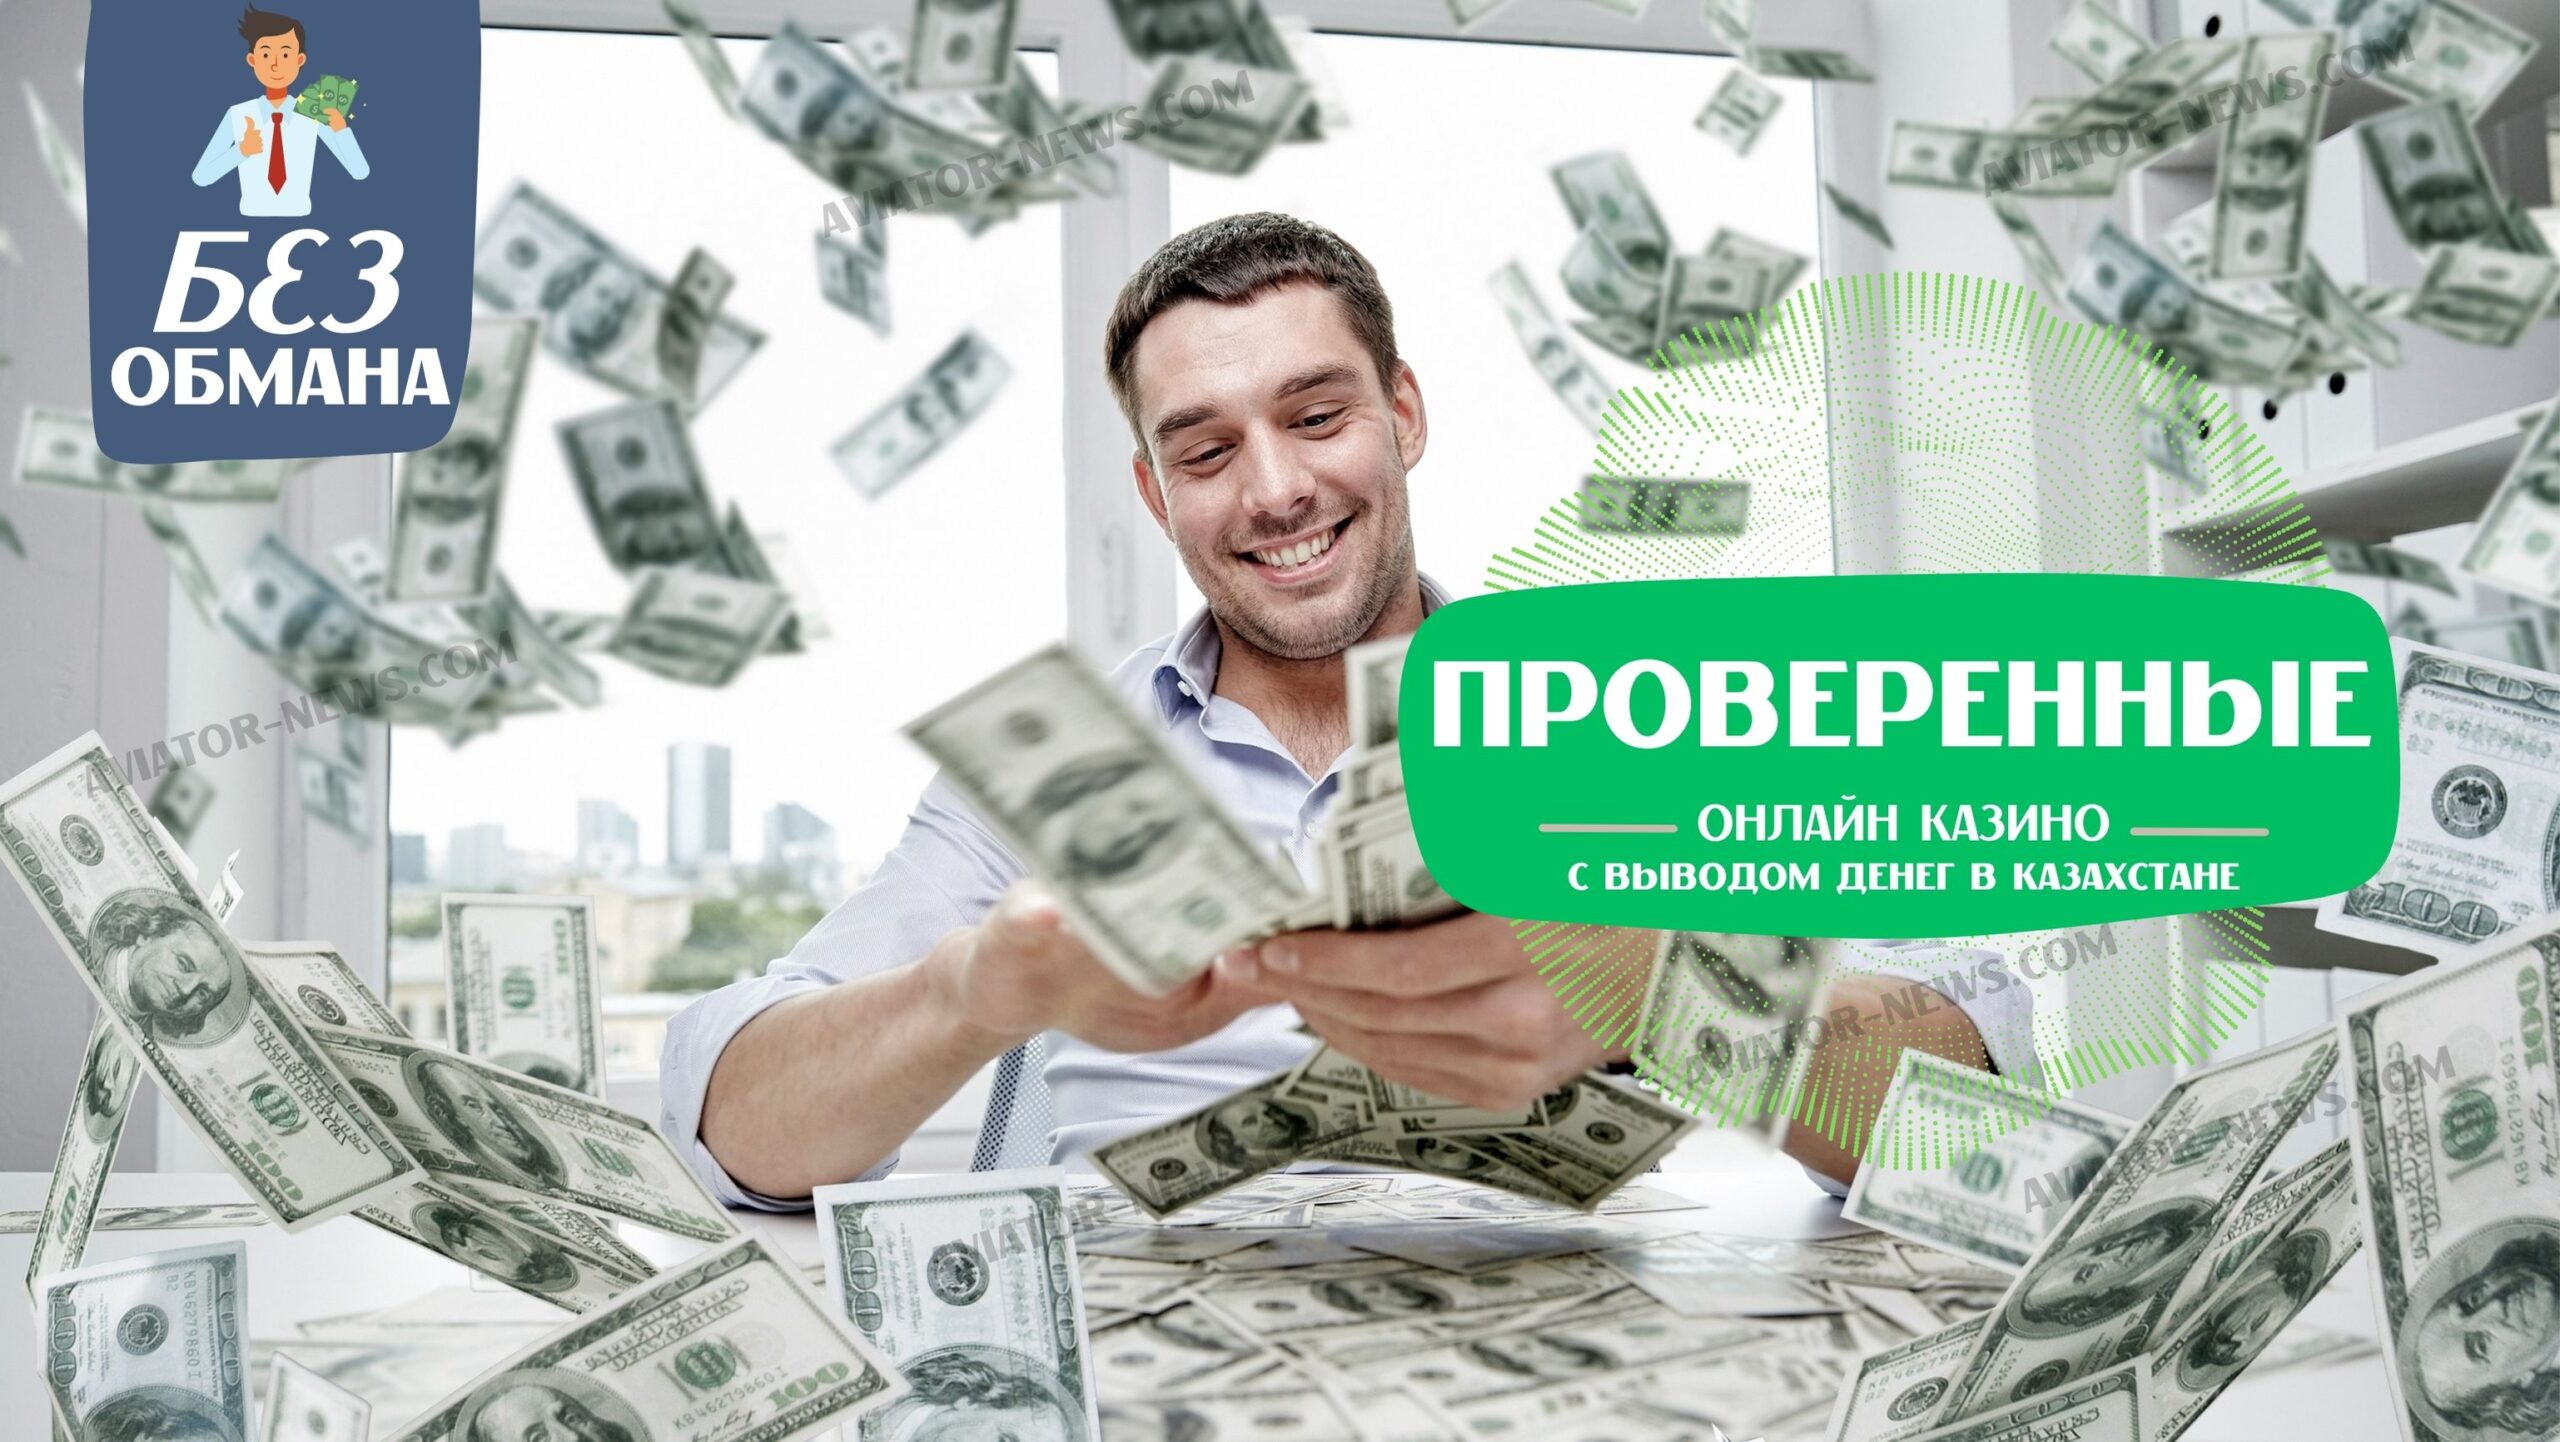 Взгляните на проверенные онлайн казино с выводом денег в Казахстане на сайте aviator-news.com